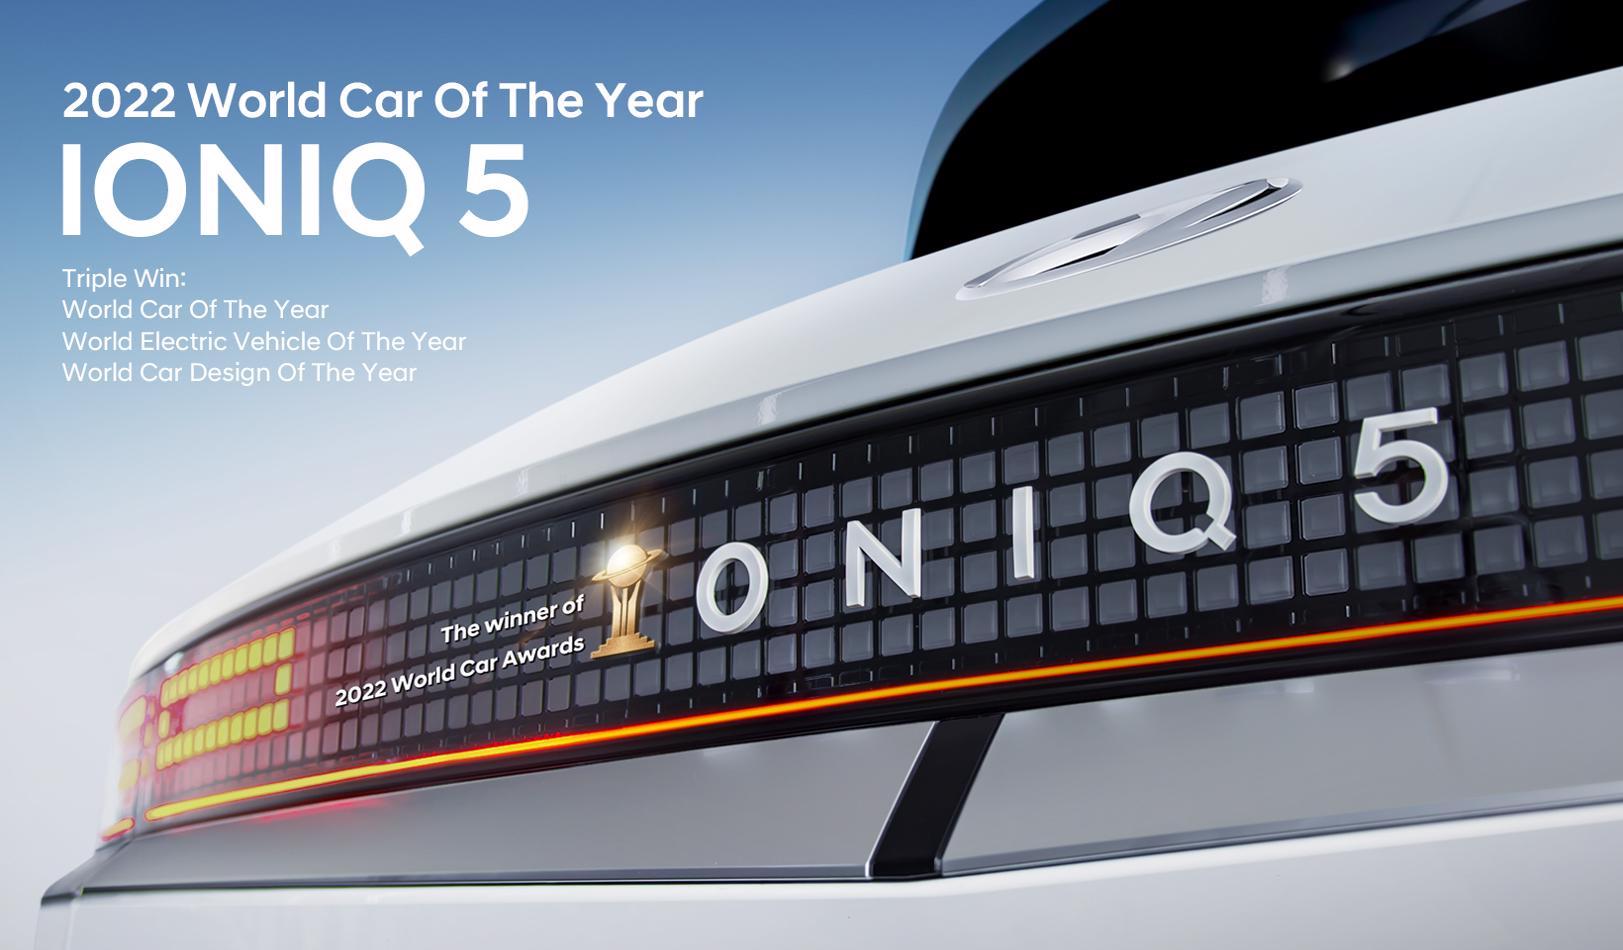 Το Hyundai IONIQ 5 ανακηρύχθηκε Παγκόσμιο Αυτοκίνητο του 2022 (World Car of the Year 2022)